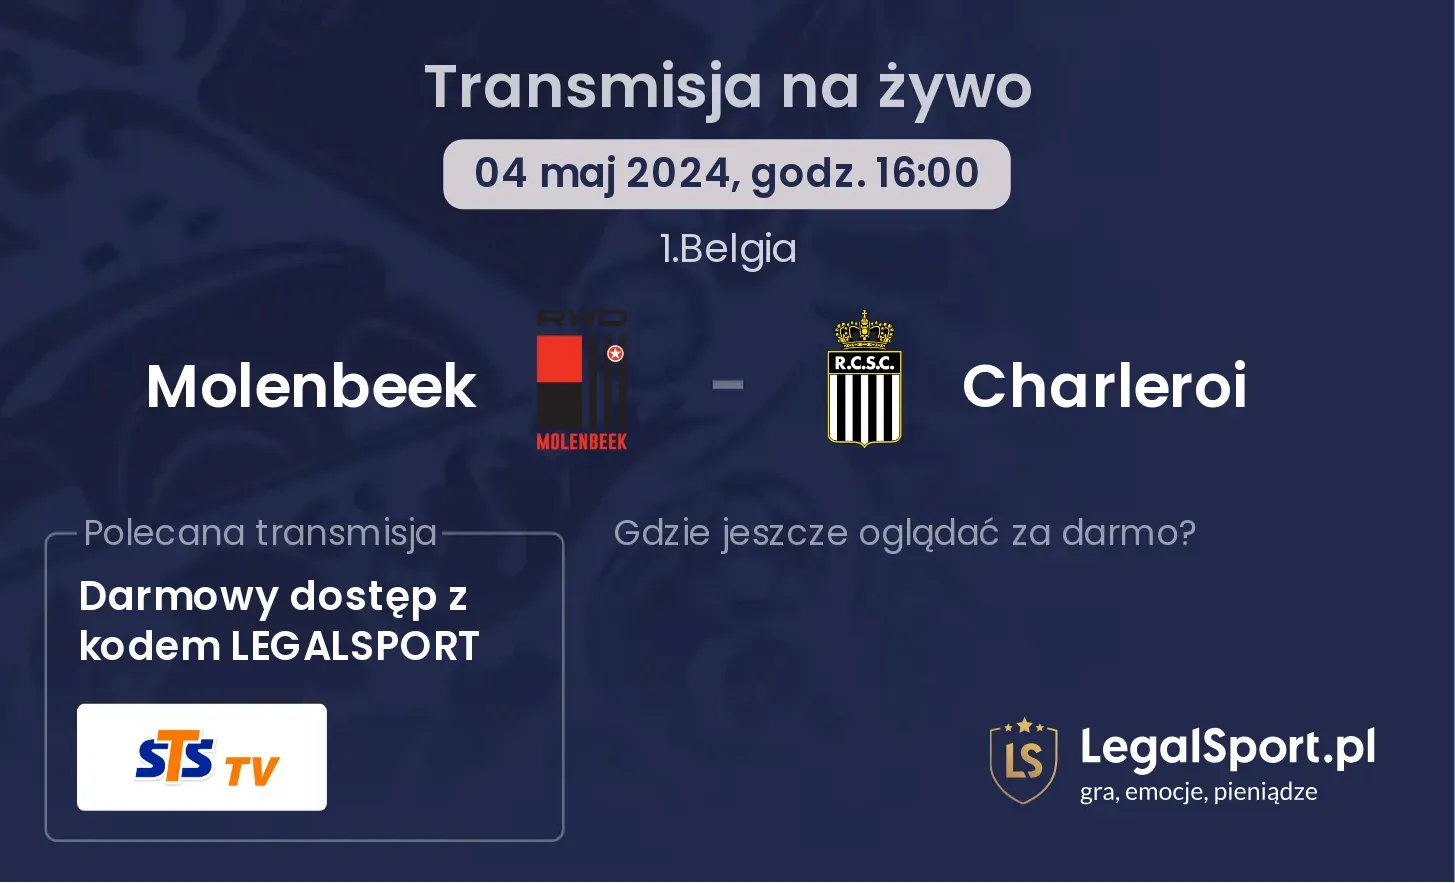 Molenbeek - Charleroi transmisja na żywo